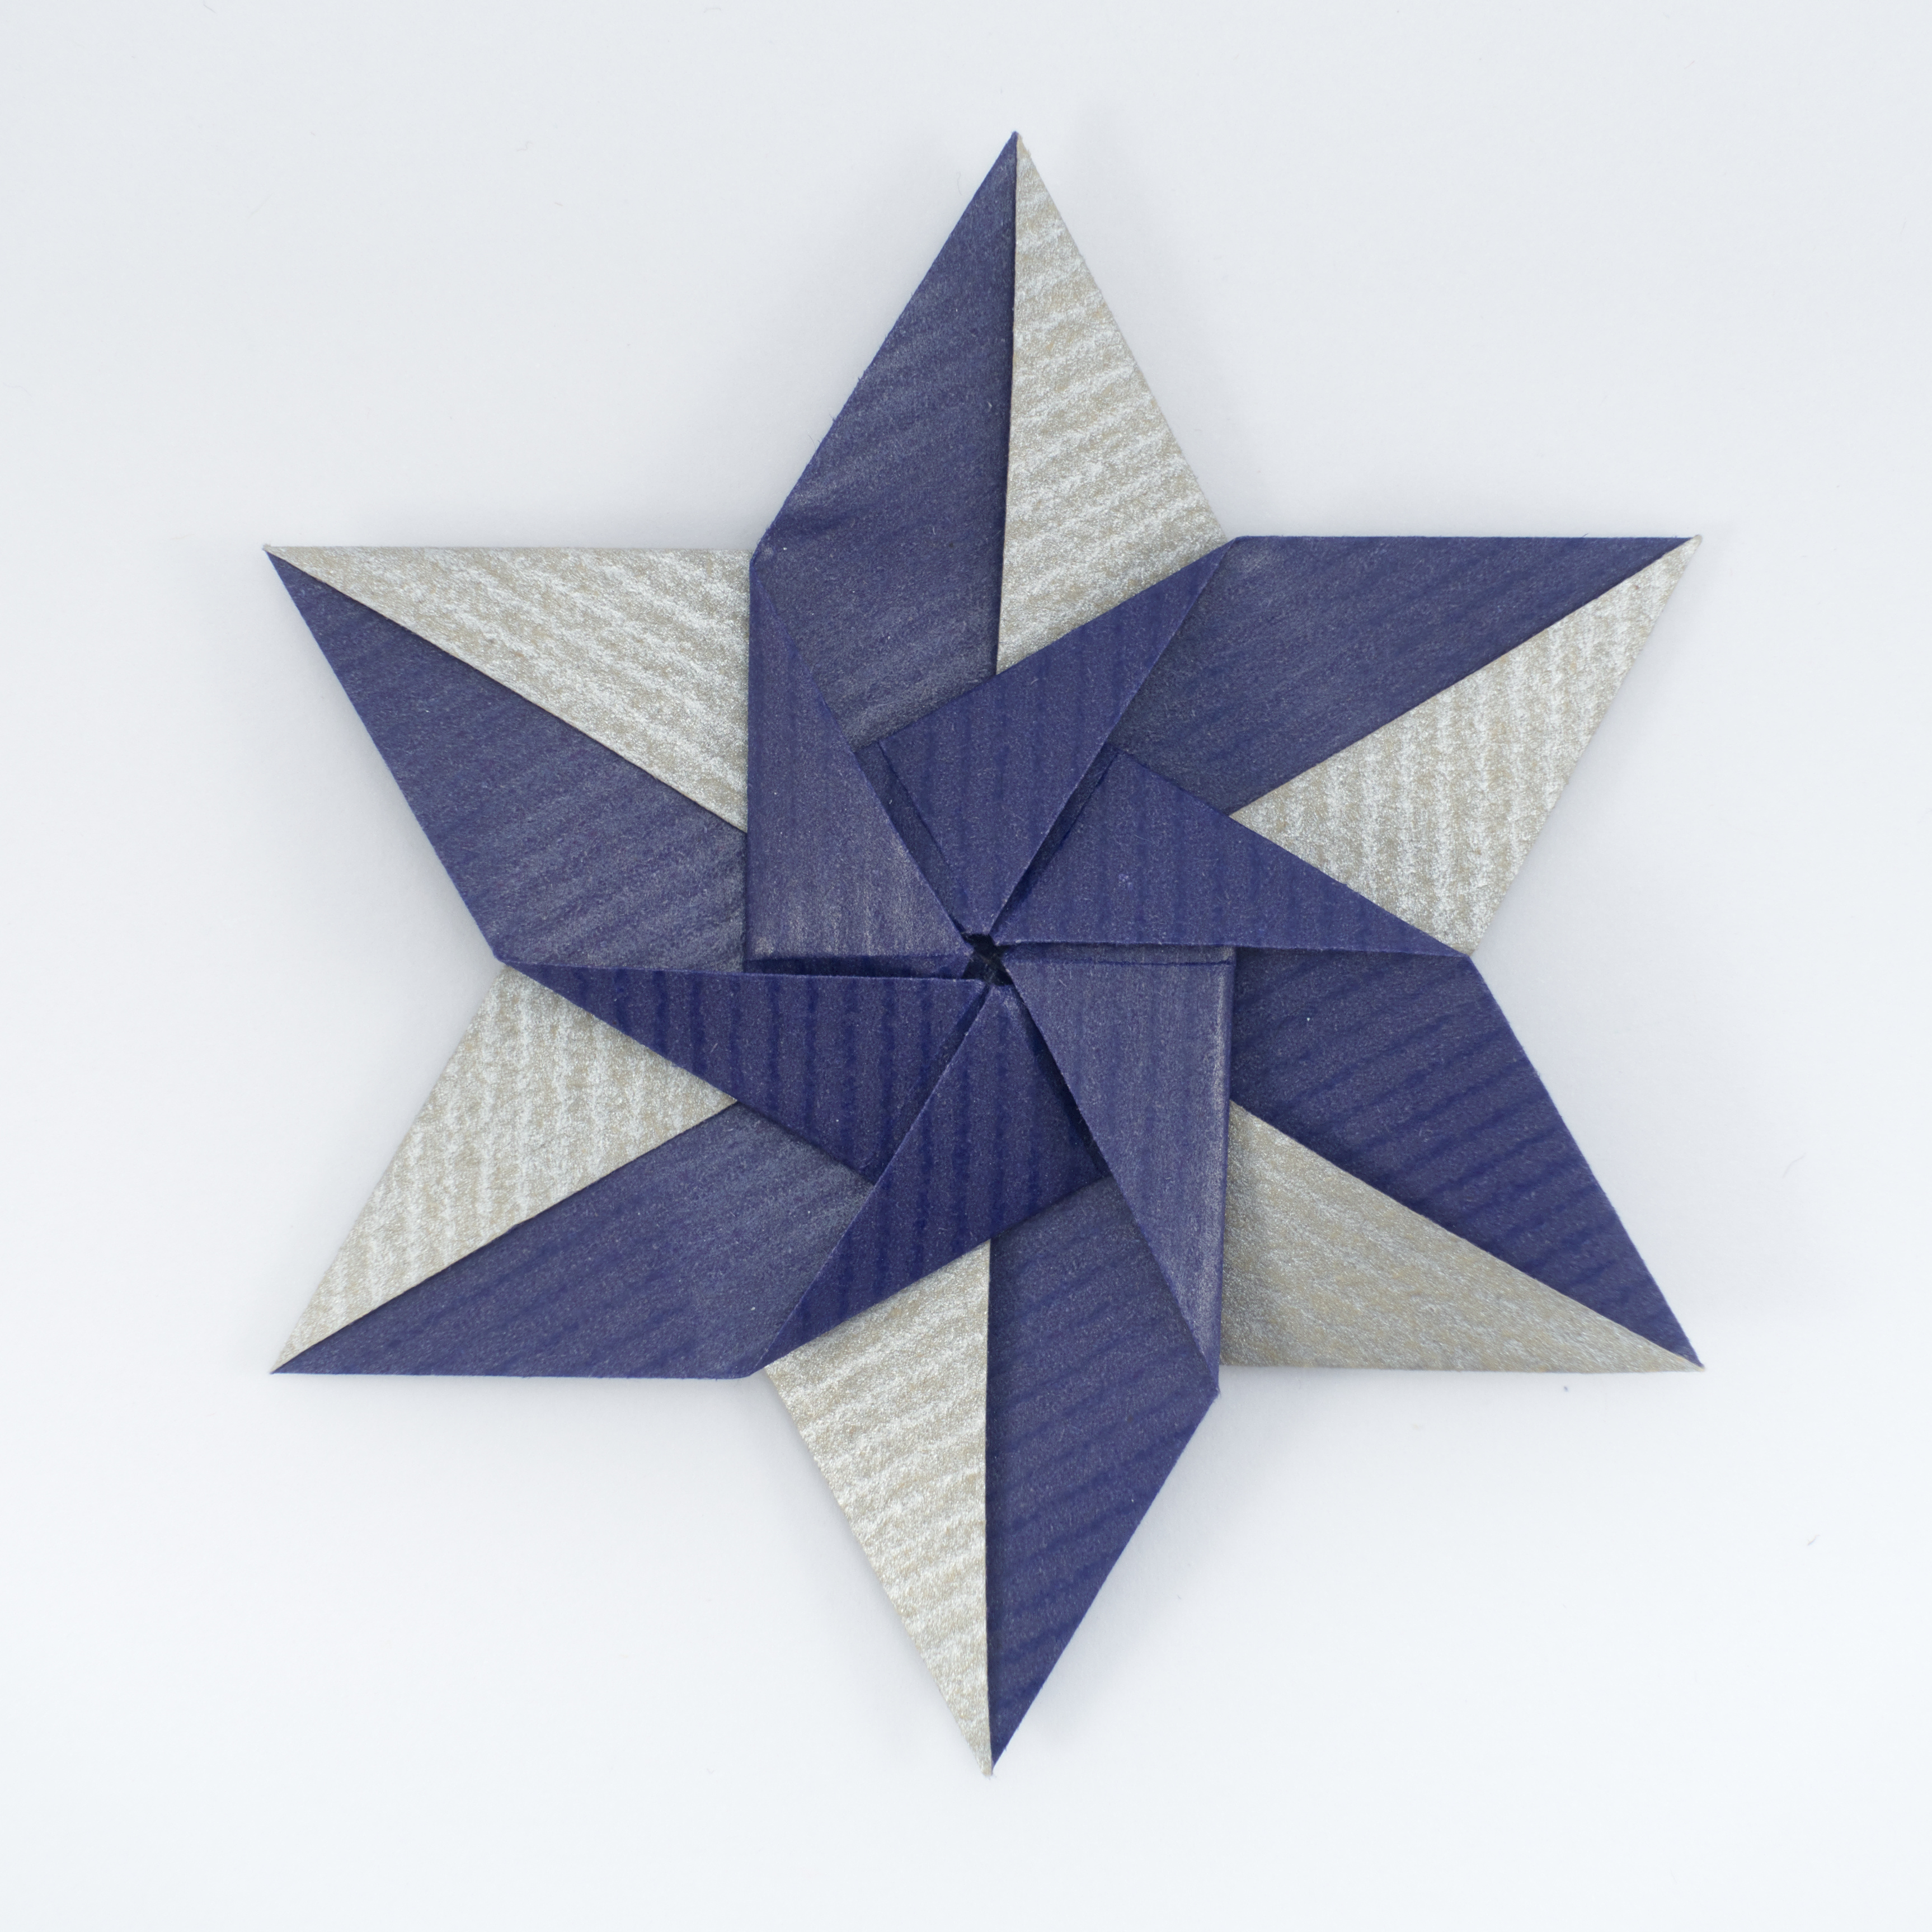 Fujimoto's Five Books are now Public Domain - Origami by Michał Kosmulski